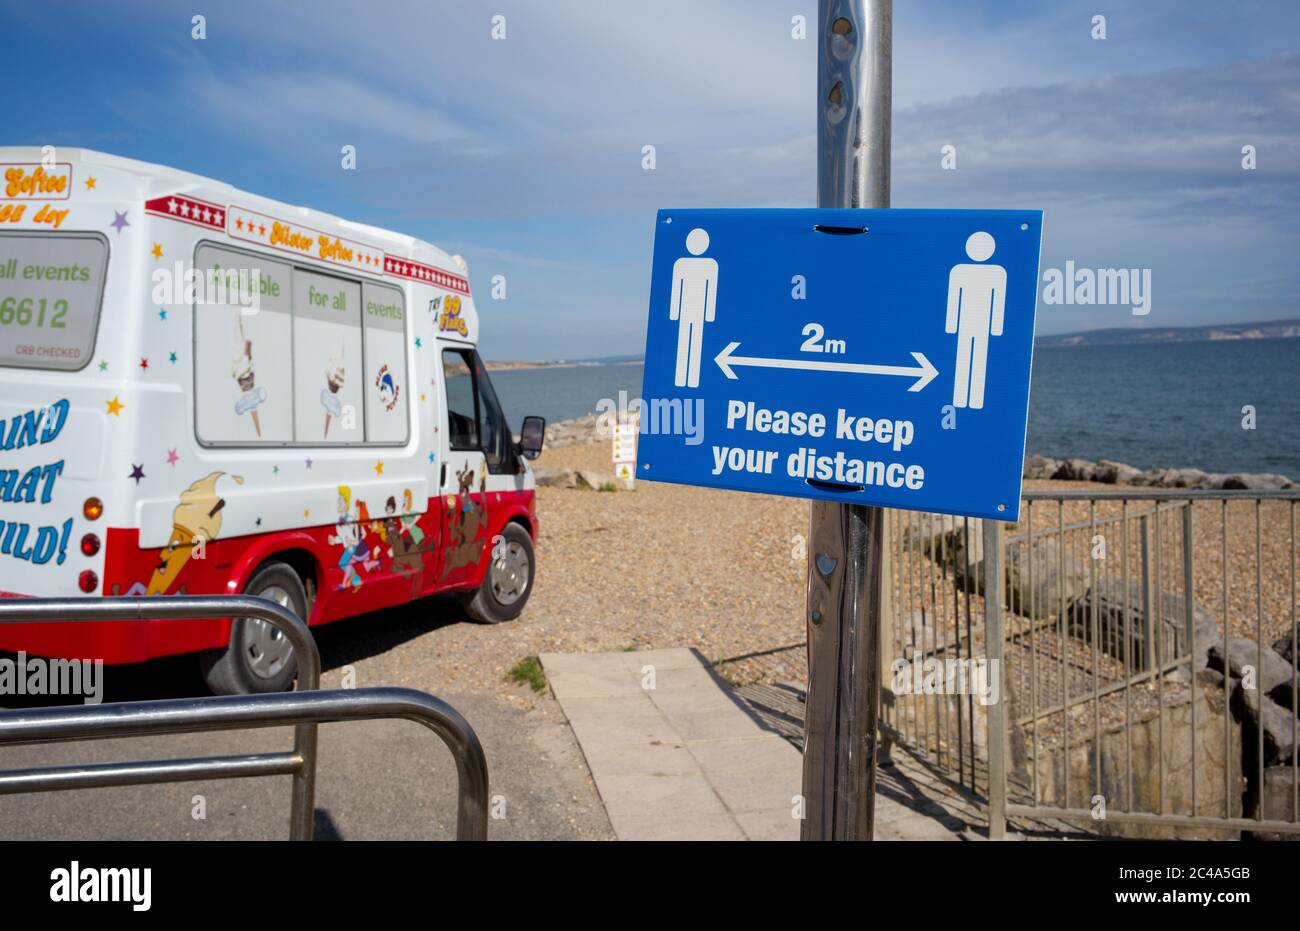 A dos metros manténgase a distancia señal de distanciamiento social en la playa de highcliffe, bournemouth. Foto de stock